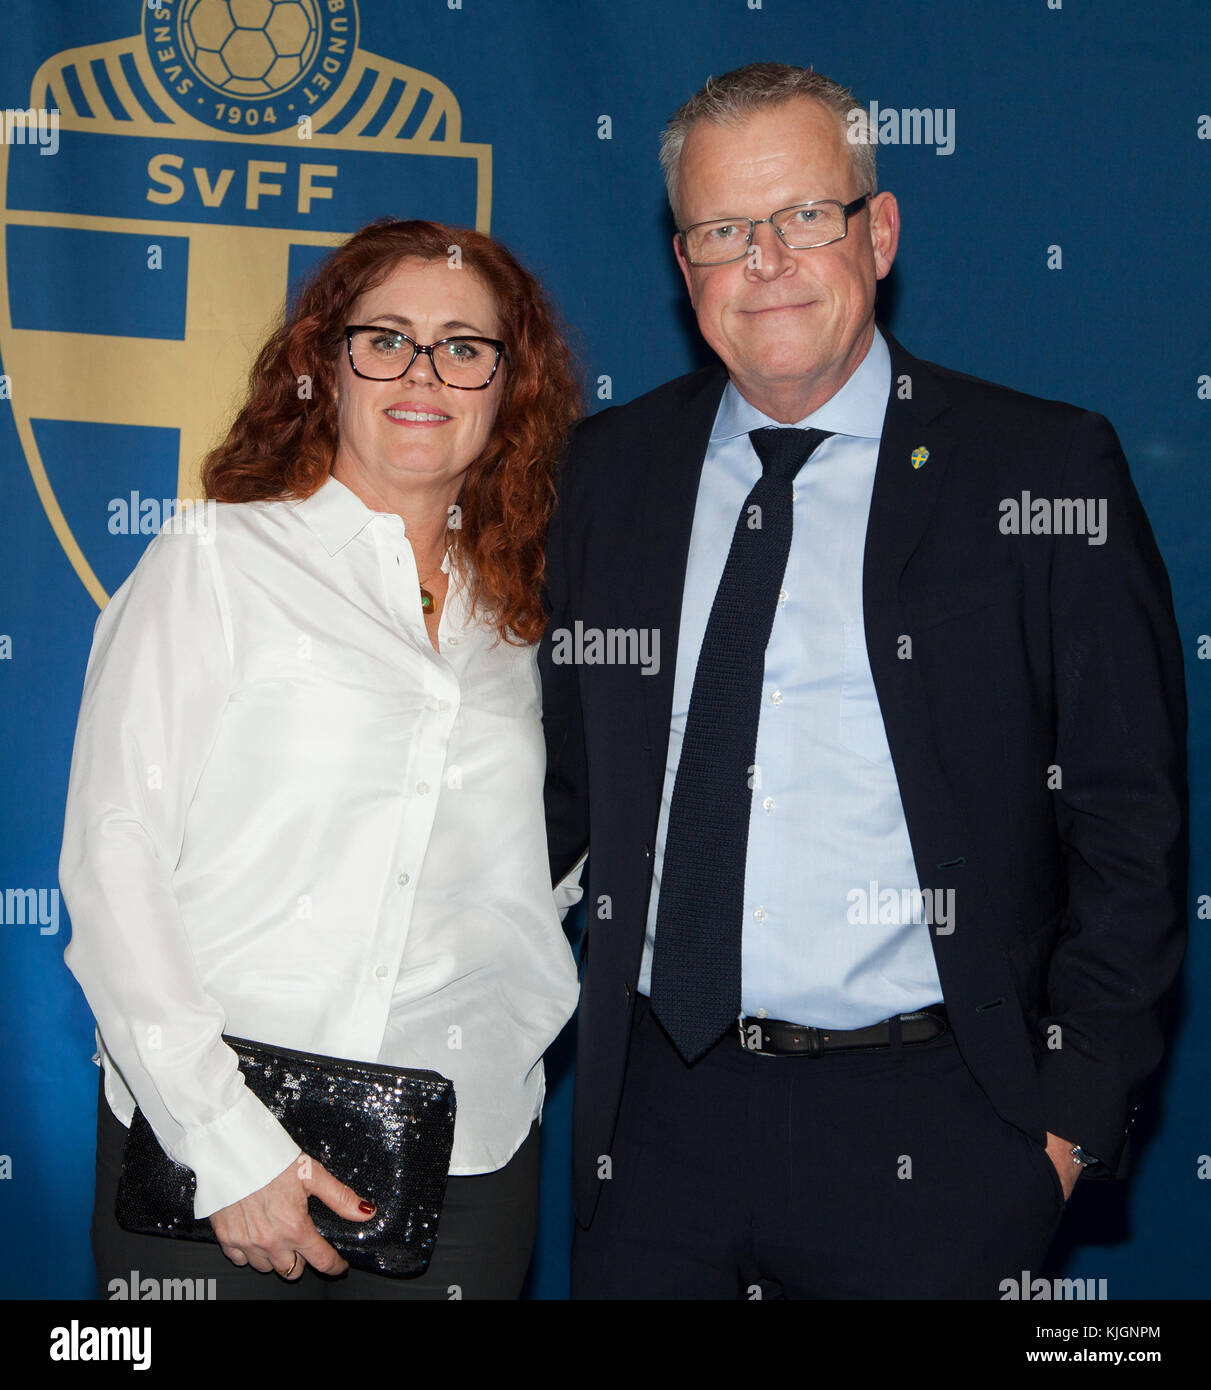 Janne andersson entraîneur pour l'équipe nationale suédoise de football en 2018 avec femme ulrika au gala de football annuel à Stockholm Banque D'Images